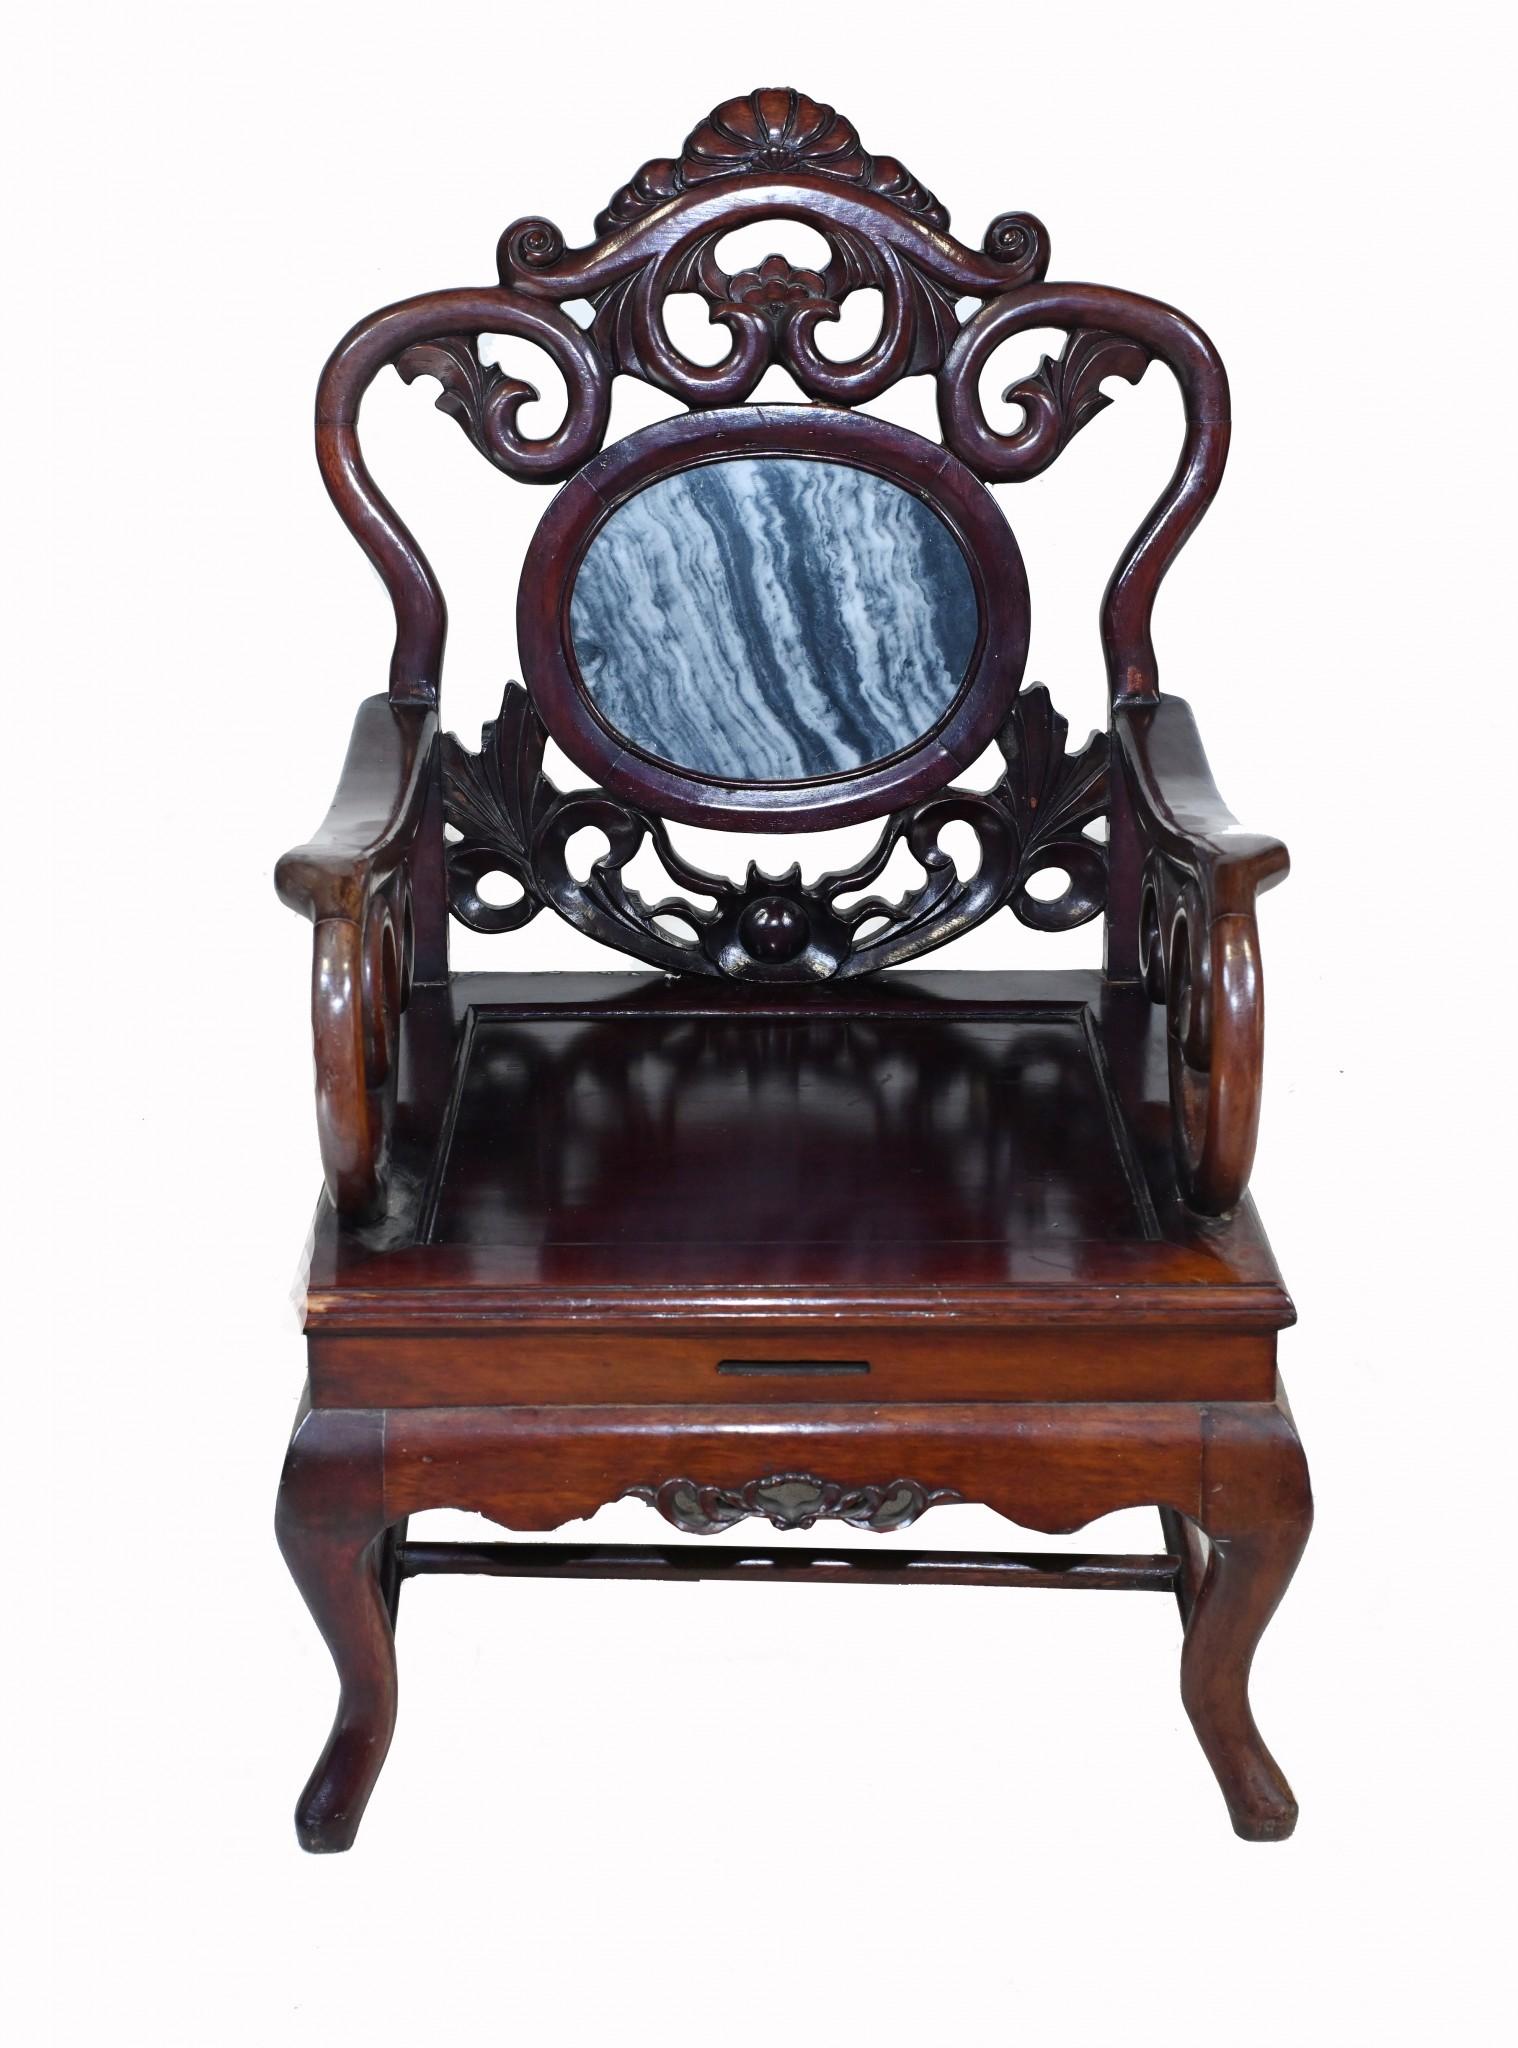 Wunderschöner einzelner chinesischer Sessel aus Hartholz
Großartiges Einrichtungsstück, perfekt für einen asiatisch inspirierten Raum in Kombination mit anderen Stücken
Ich liebe die handgeschnitzten Rückenlehnen im Jugendstil und die